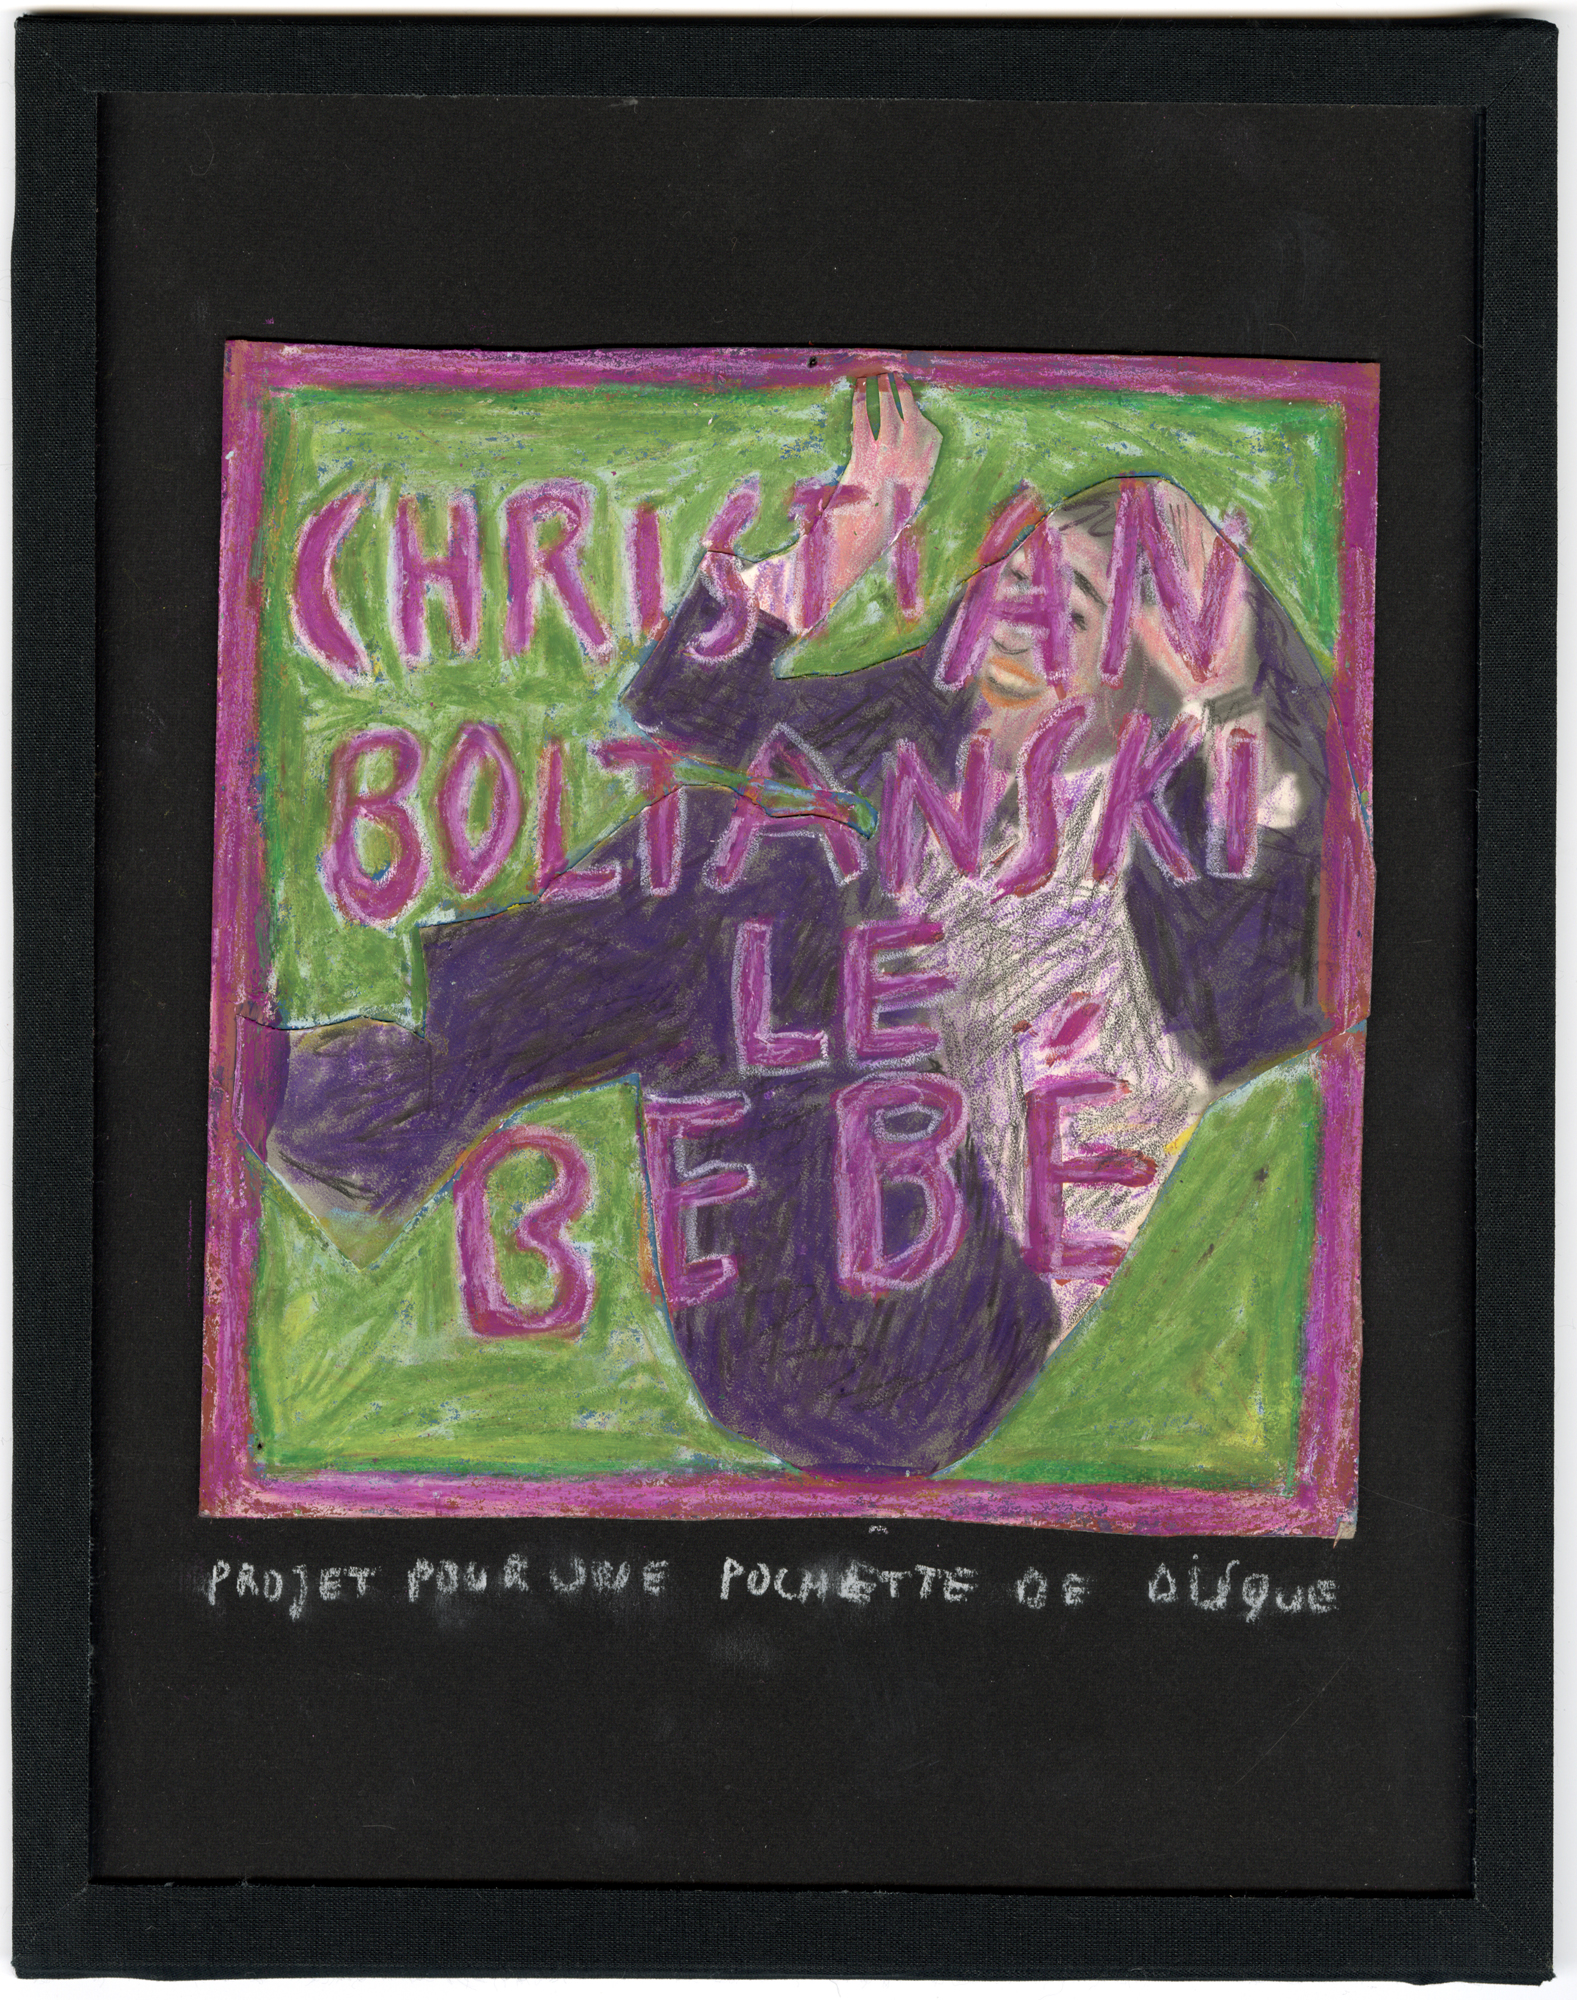 Christian Boltanski, CHRISTIAN BOLTANSKI , LE BÉBÉ, PROJET POUR UNE POCHETTE DE DISQUE, um 1975